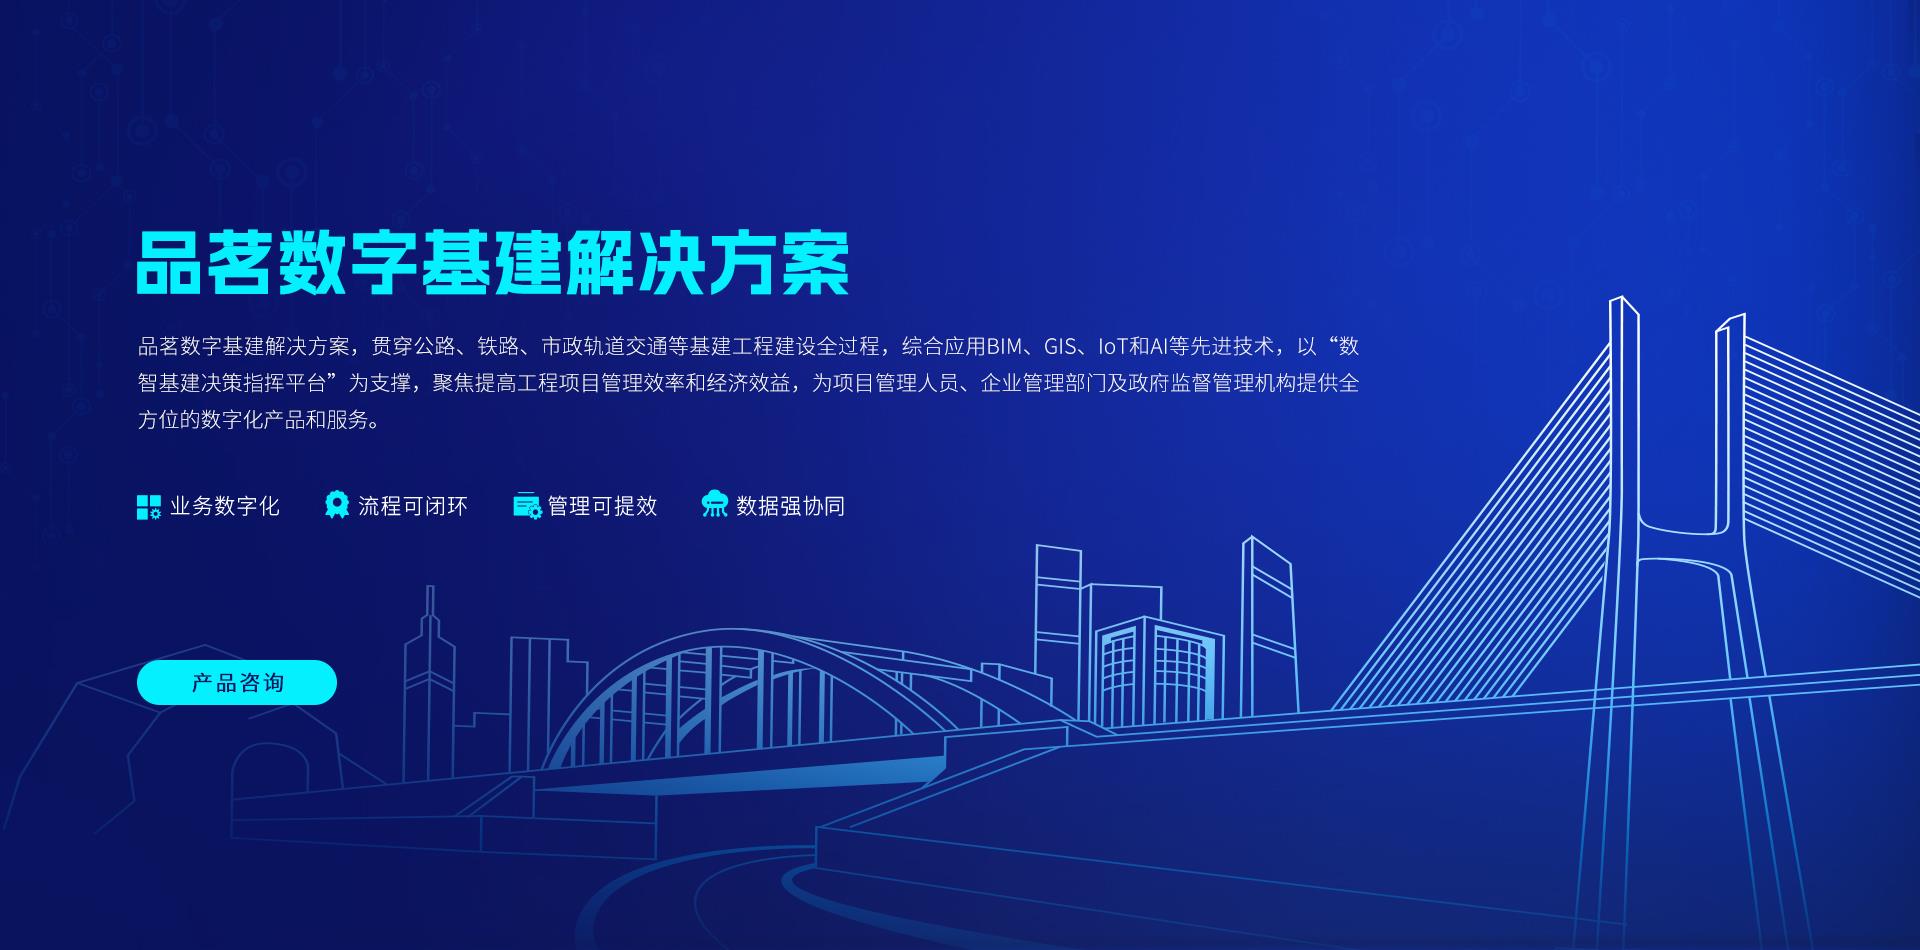 香港另版挂牌彩图更新数字基建解决方案